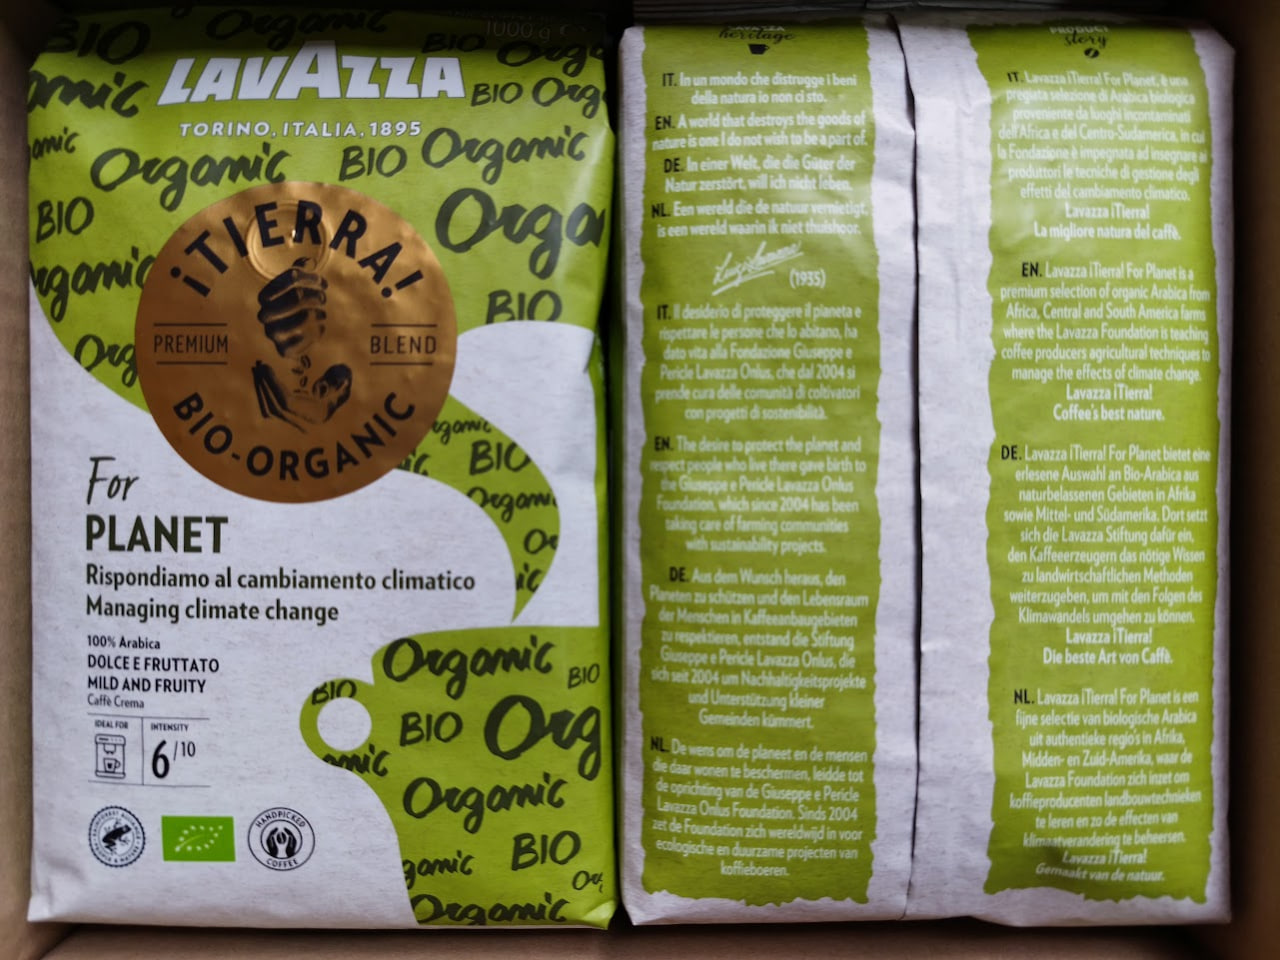 Pupiņu kafija "LAVAZZA" ¡Tierra! Bio-Organic